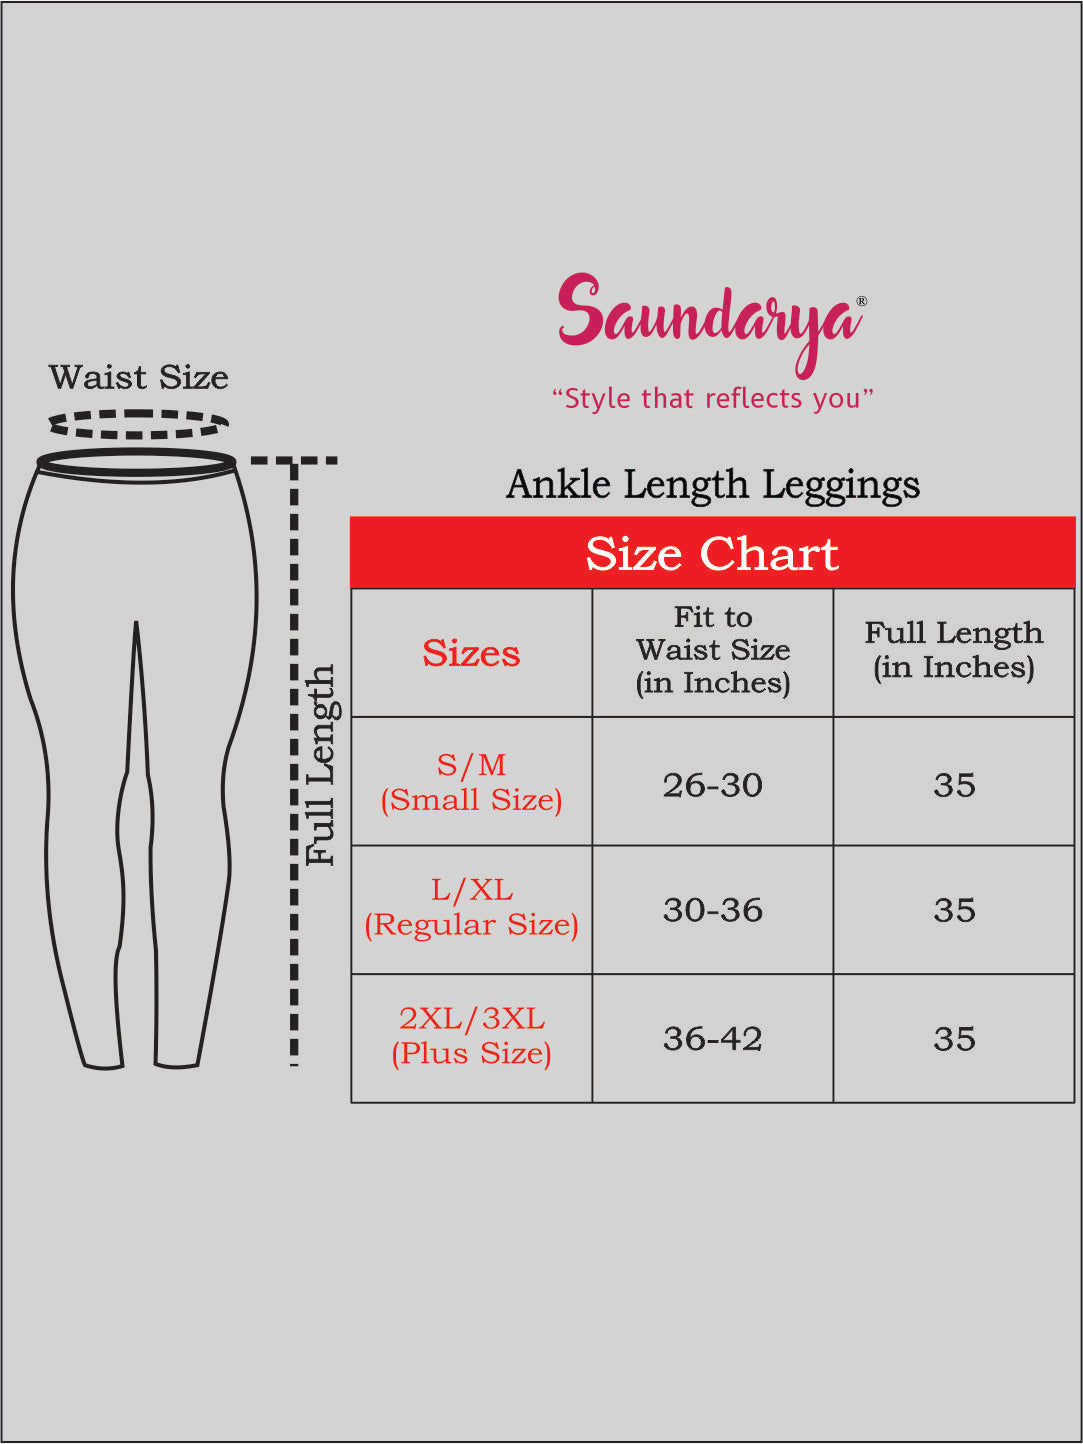 Saundarya Women's Teal Green Ankle Length Leggings Cotton